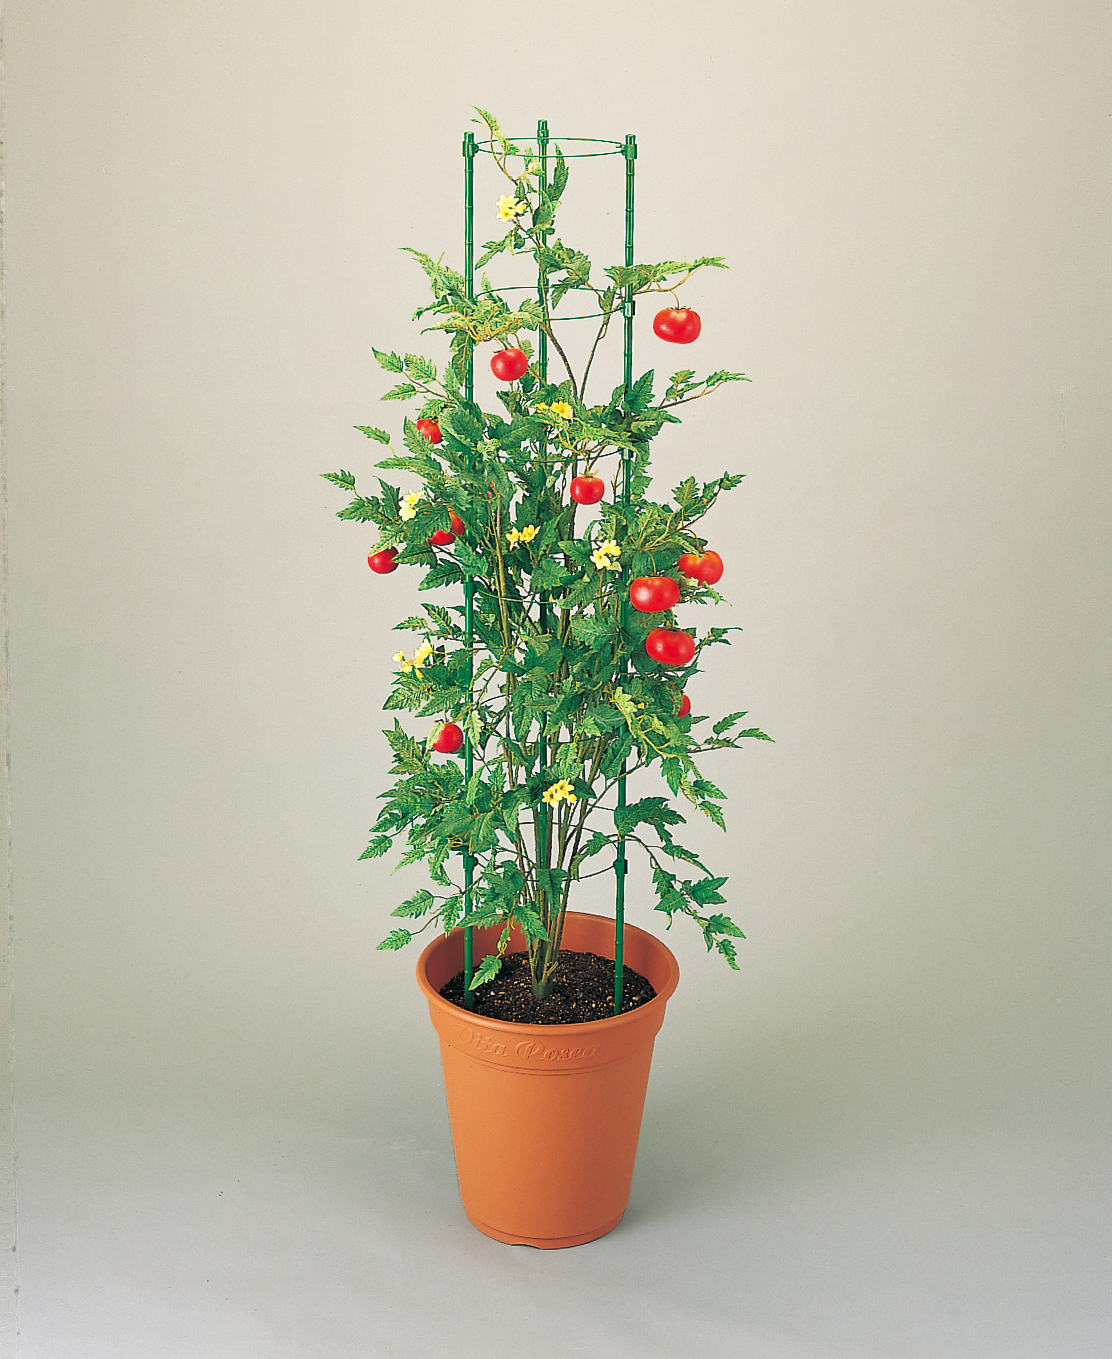 リング式トマト支柱の写真ダウンロード 株 ニチカン